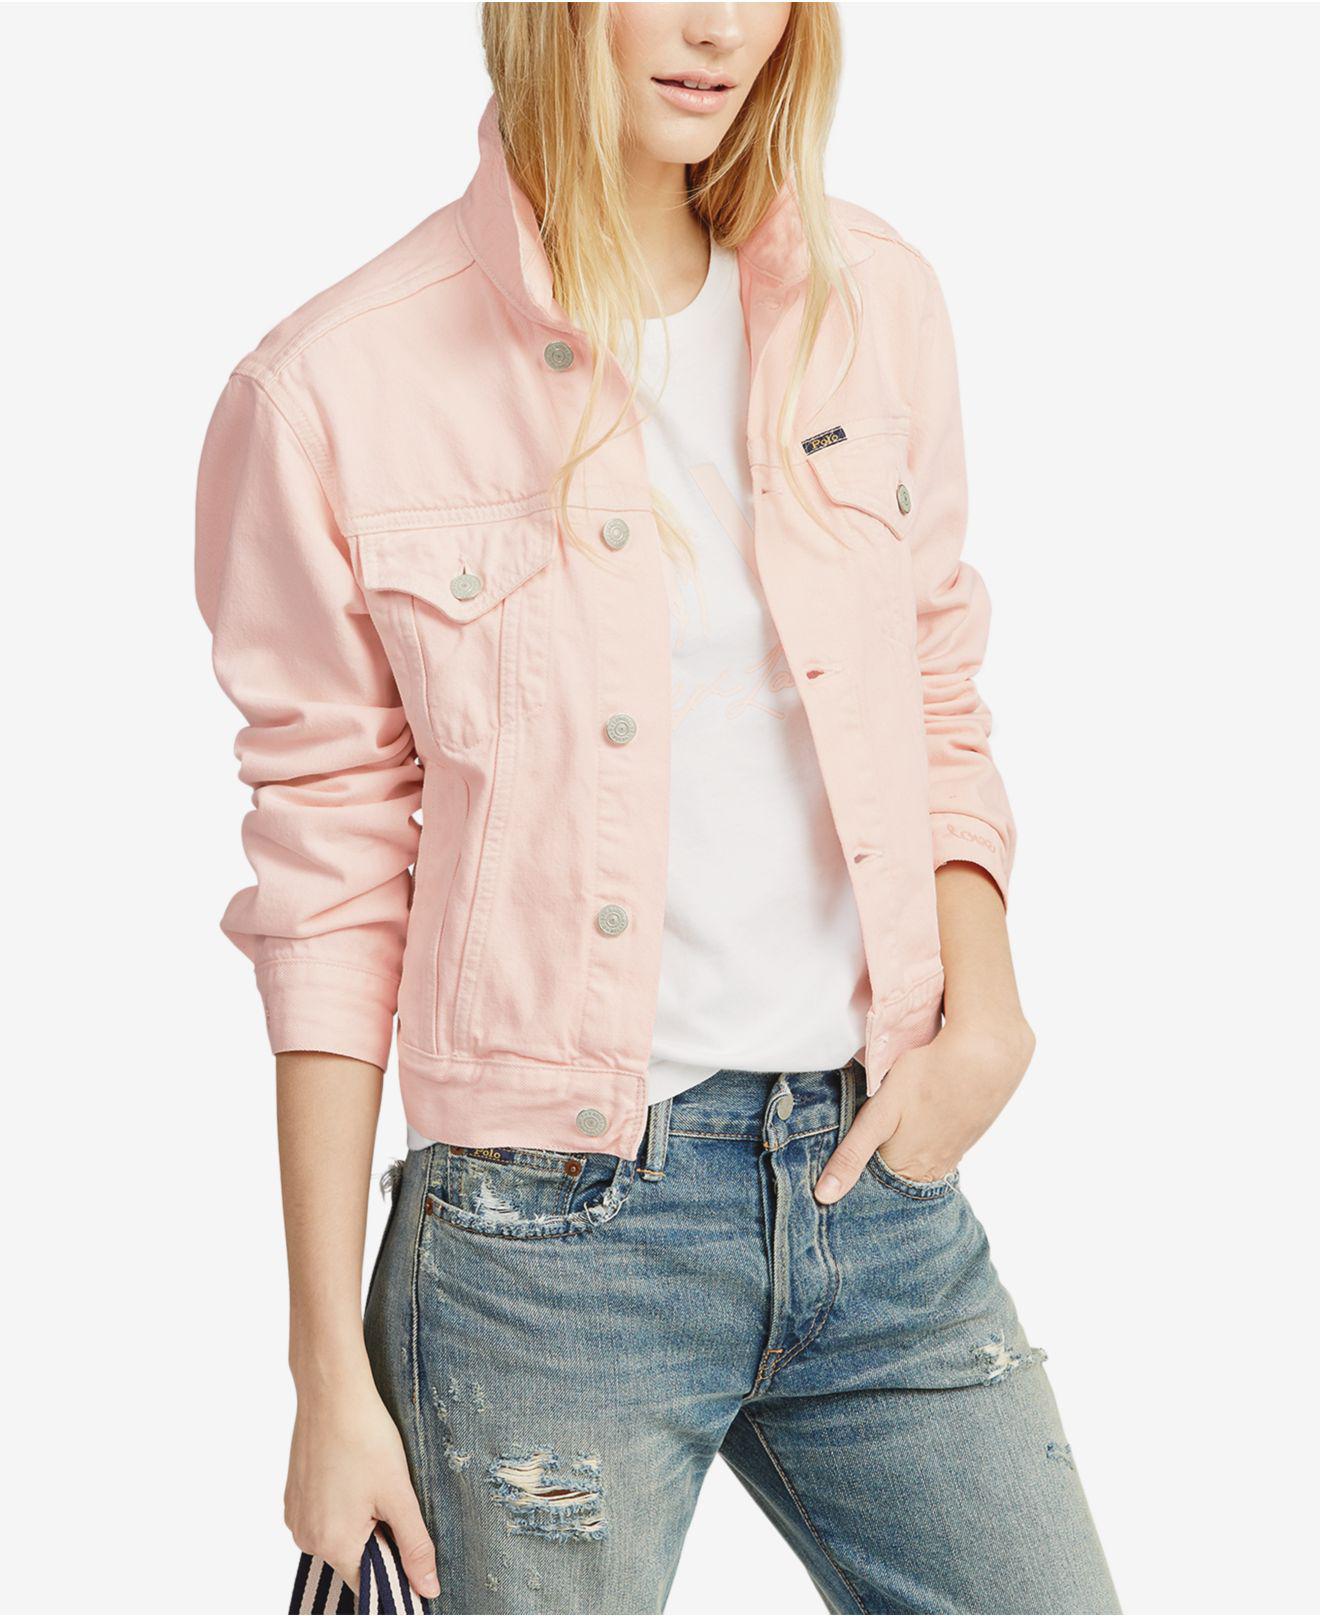 pink ralph lauren jacket